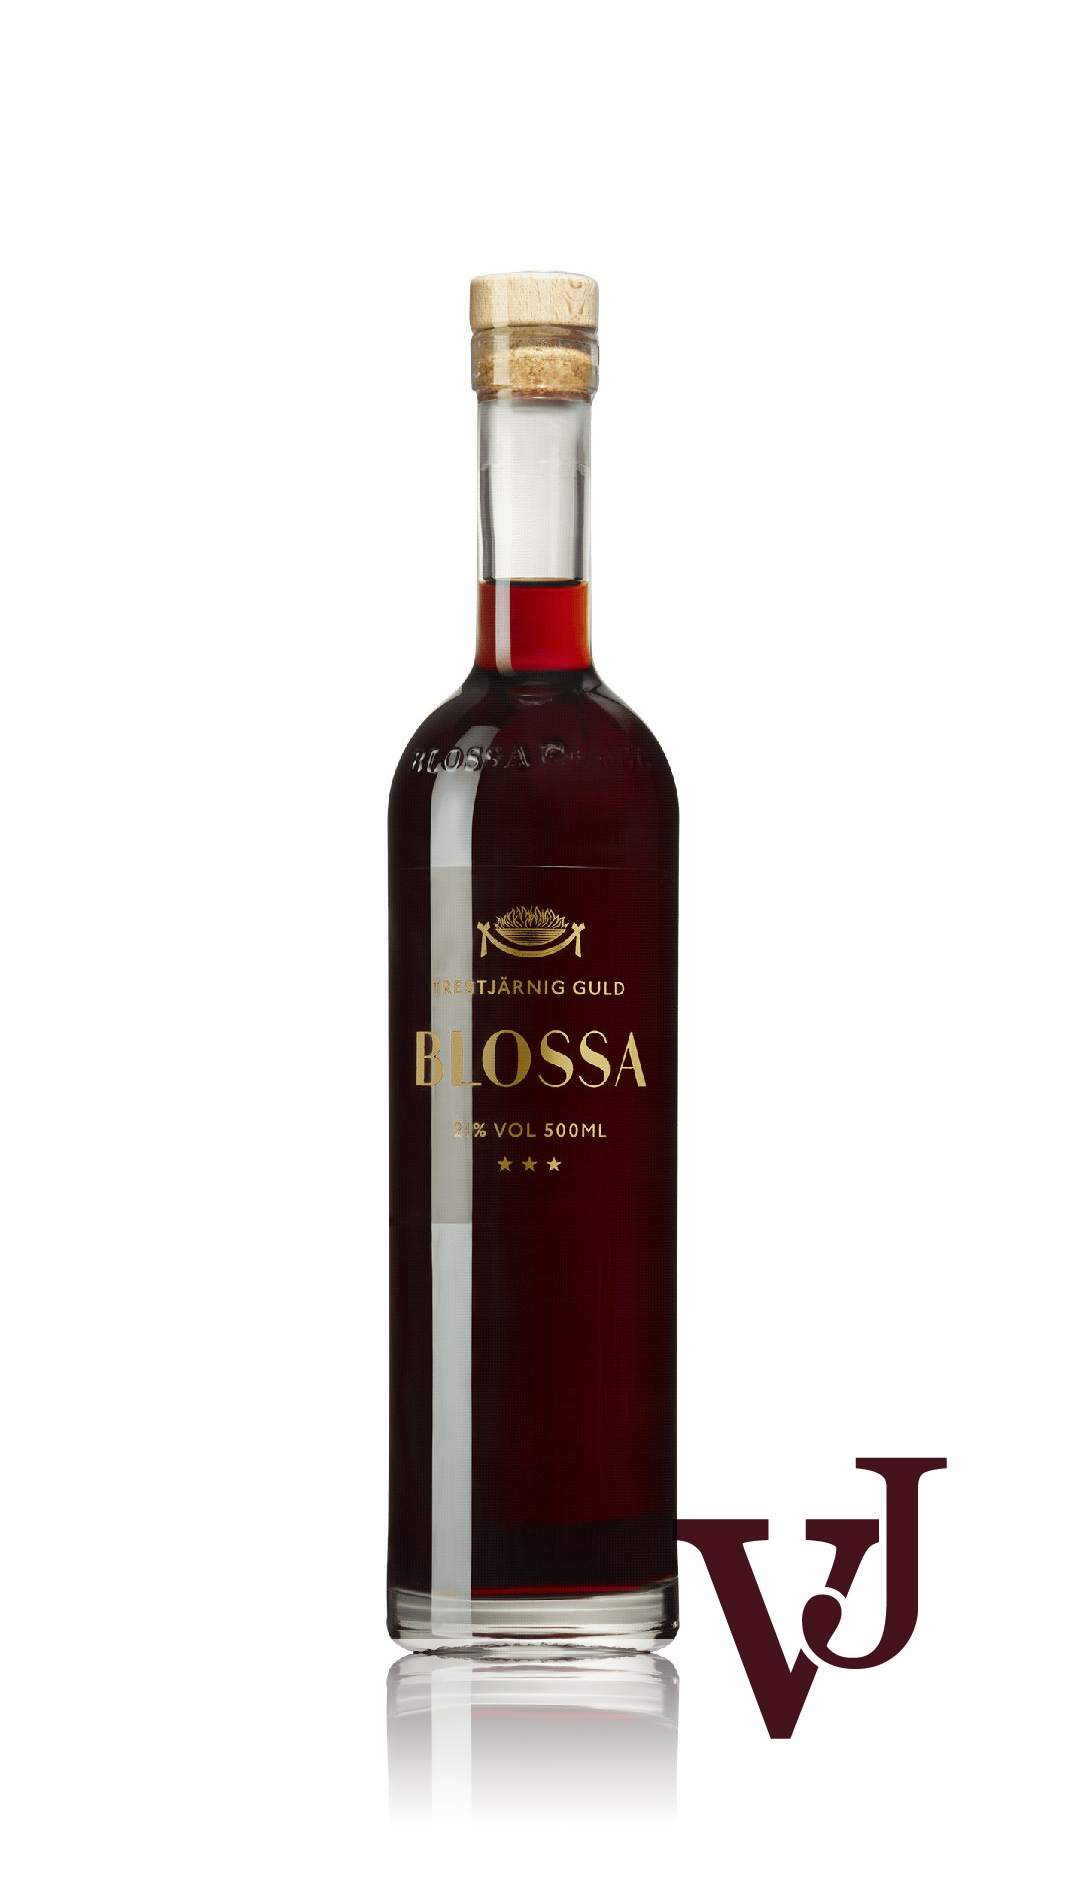 Övrigt vin - Blossa Trestjärnig Guld artikel nummer 9651702 från producenten Altia från området Varumärketärinternationellt